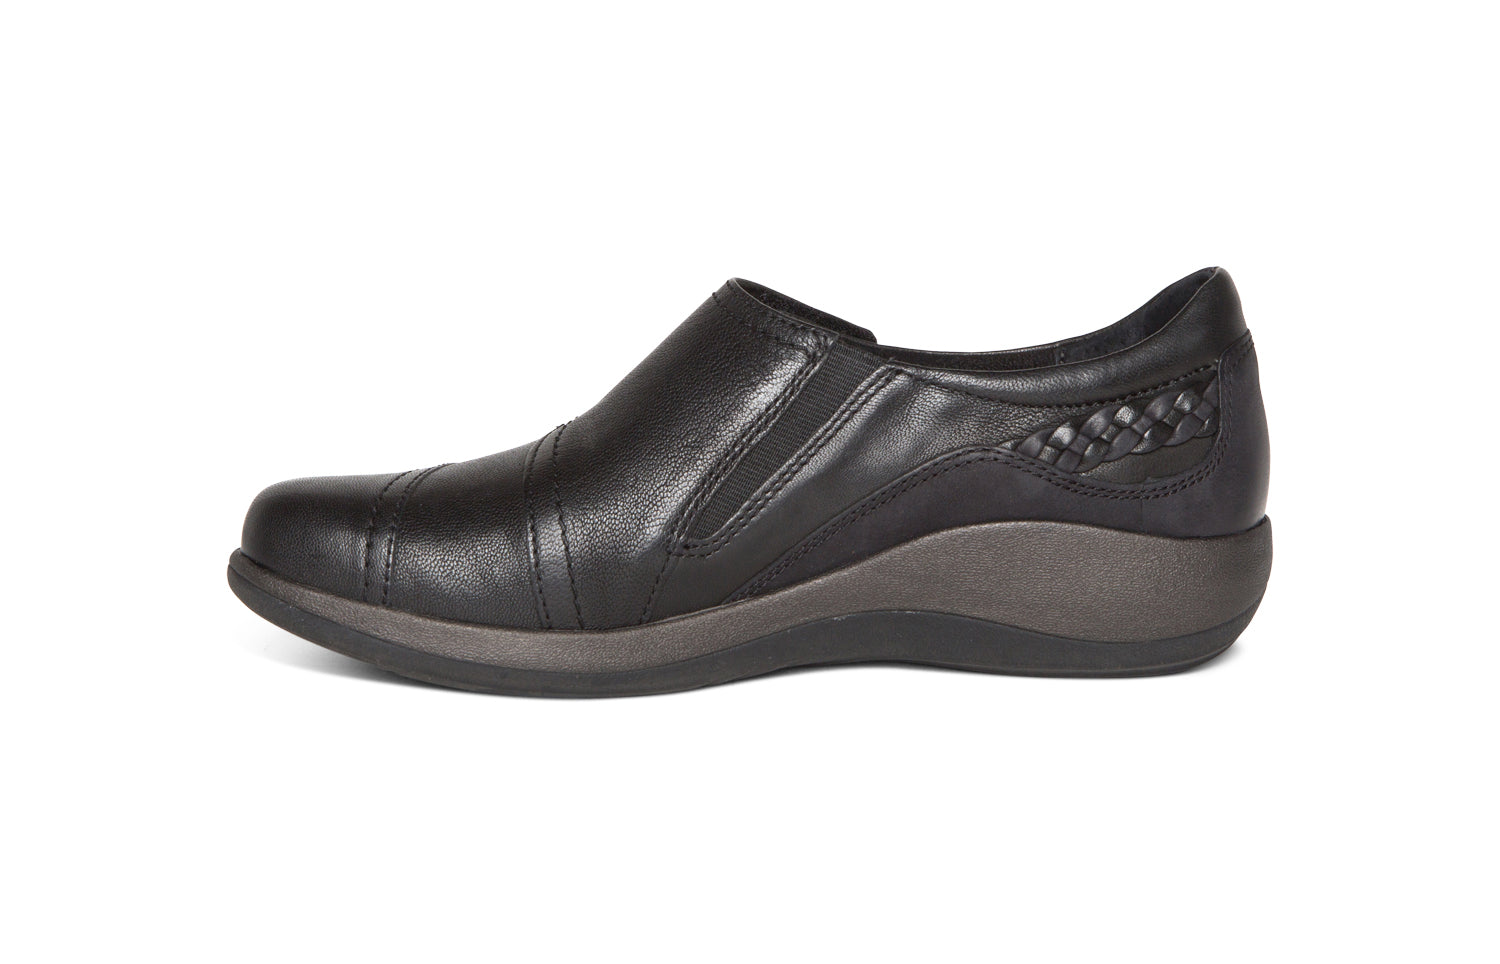 Aetrex Women's Karina Monk Strap Casual Shoe Black